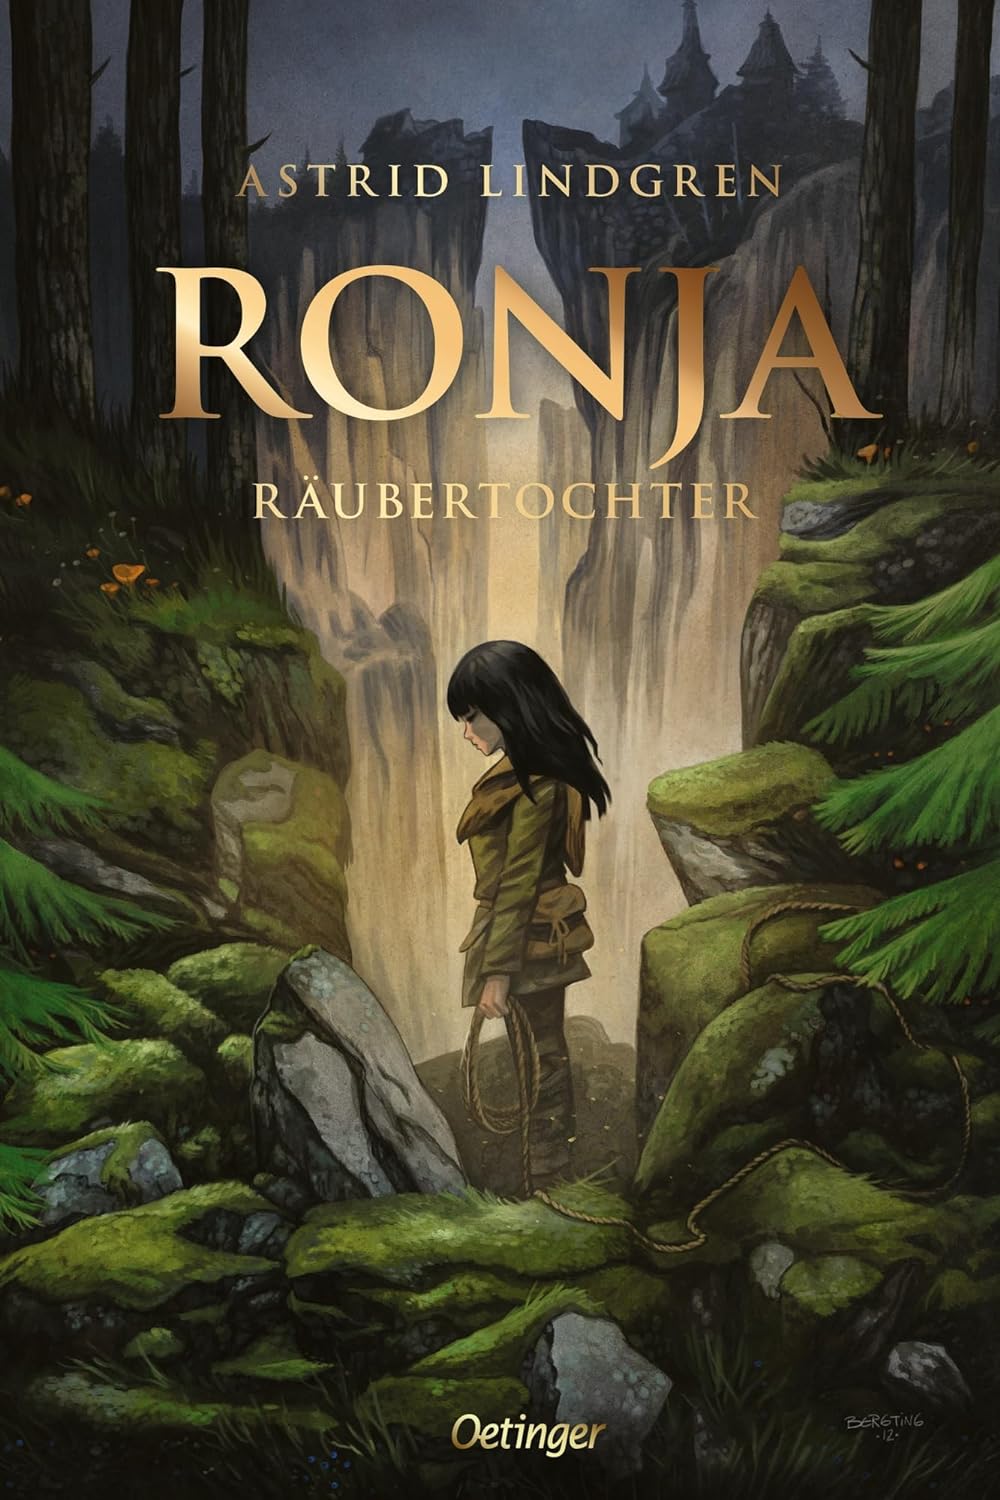 Buchcover von 'Ronja Räubertochter' von Astrid Lindgren, ein abenteuerliches Kinderbuch zum Vorlesen, zeigt Ronja in der wilden Mattisburg, umgeben von der mystischen Waldlandschaft.